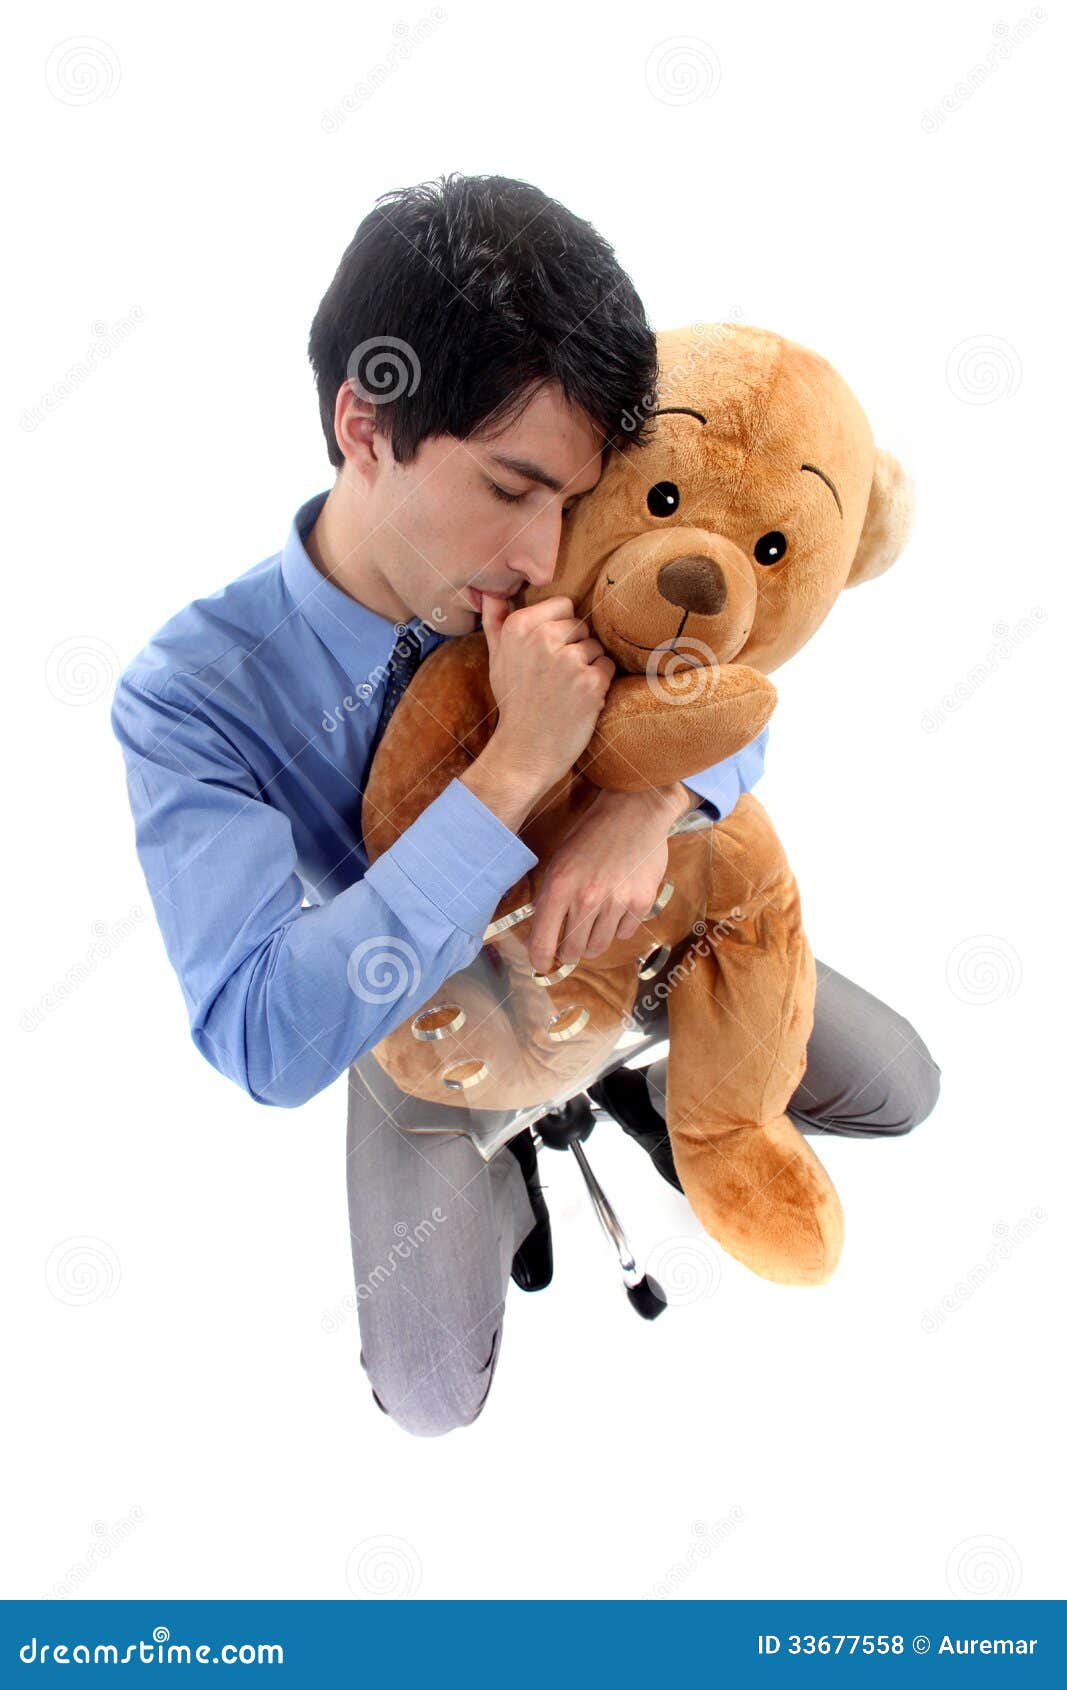 businessman-hugging-teddy-bear-33677558.